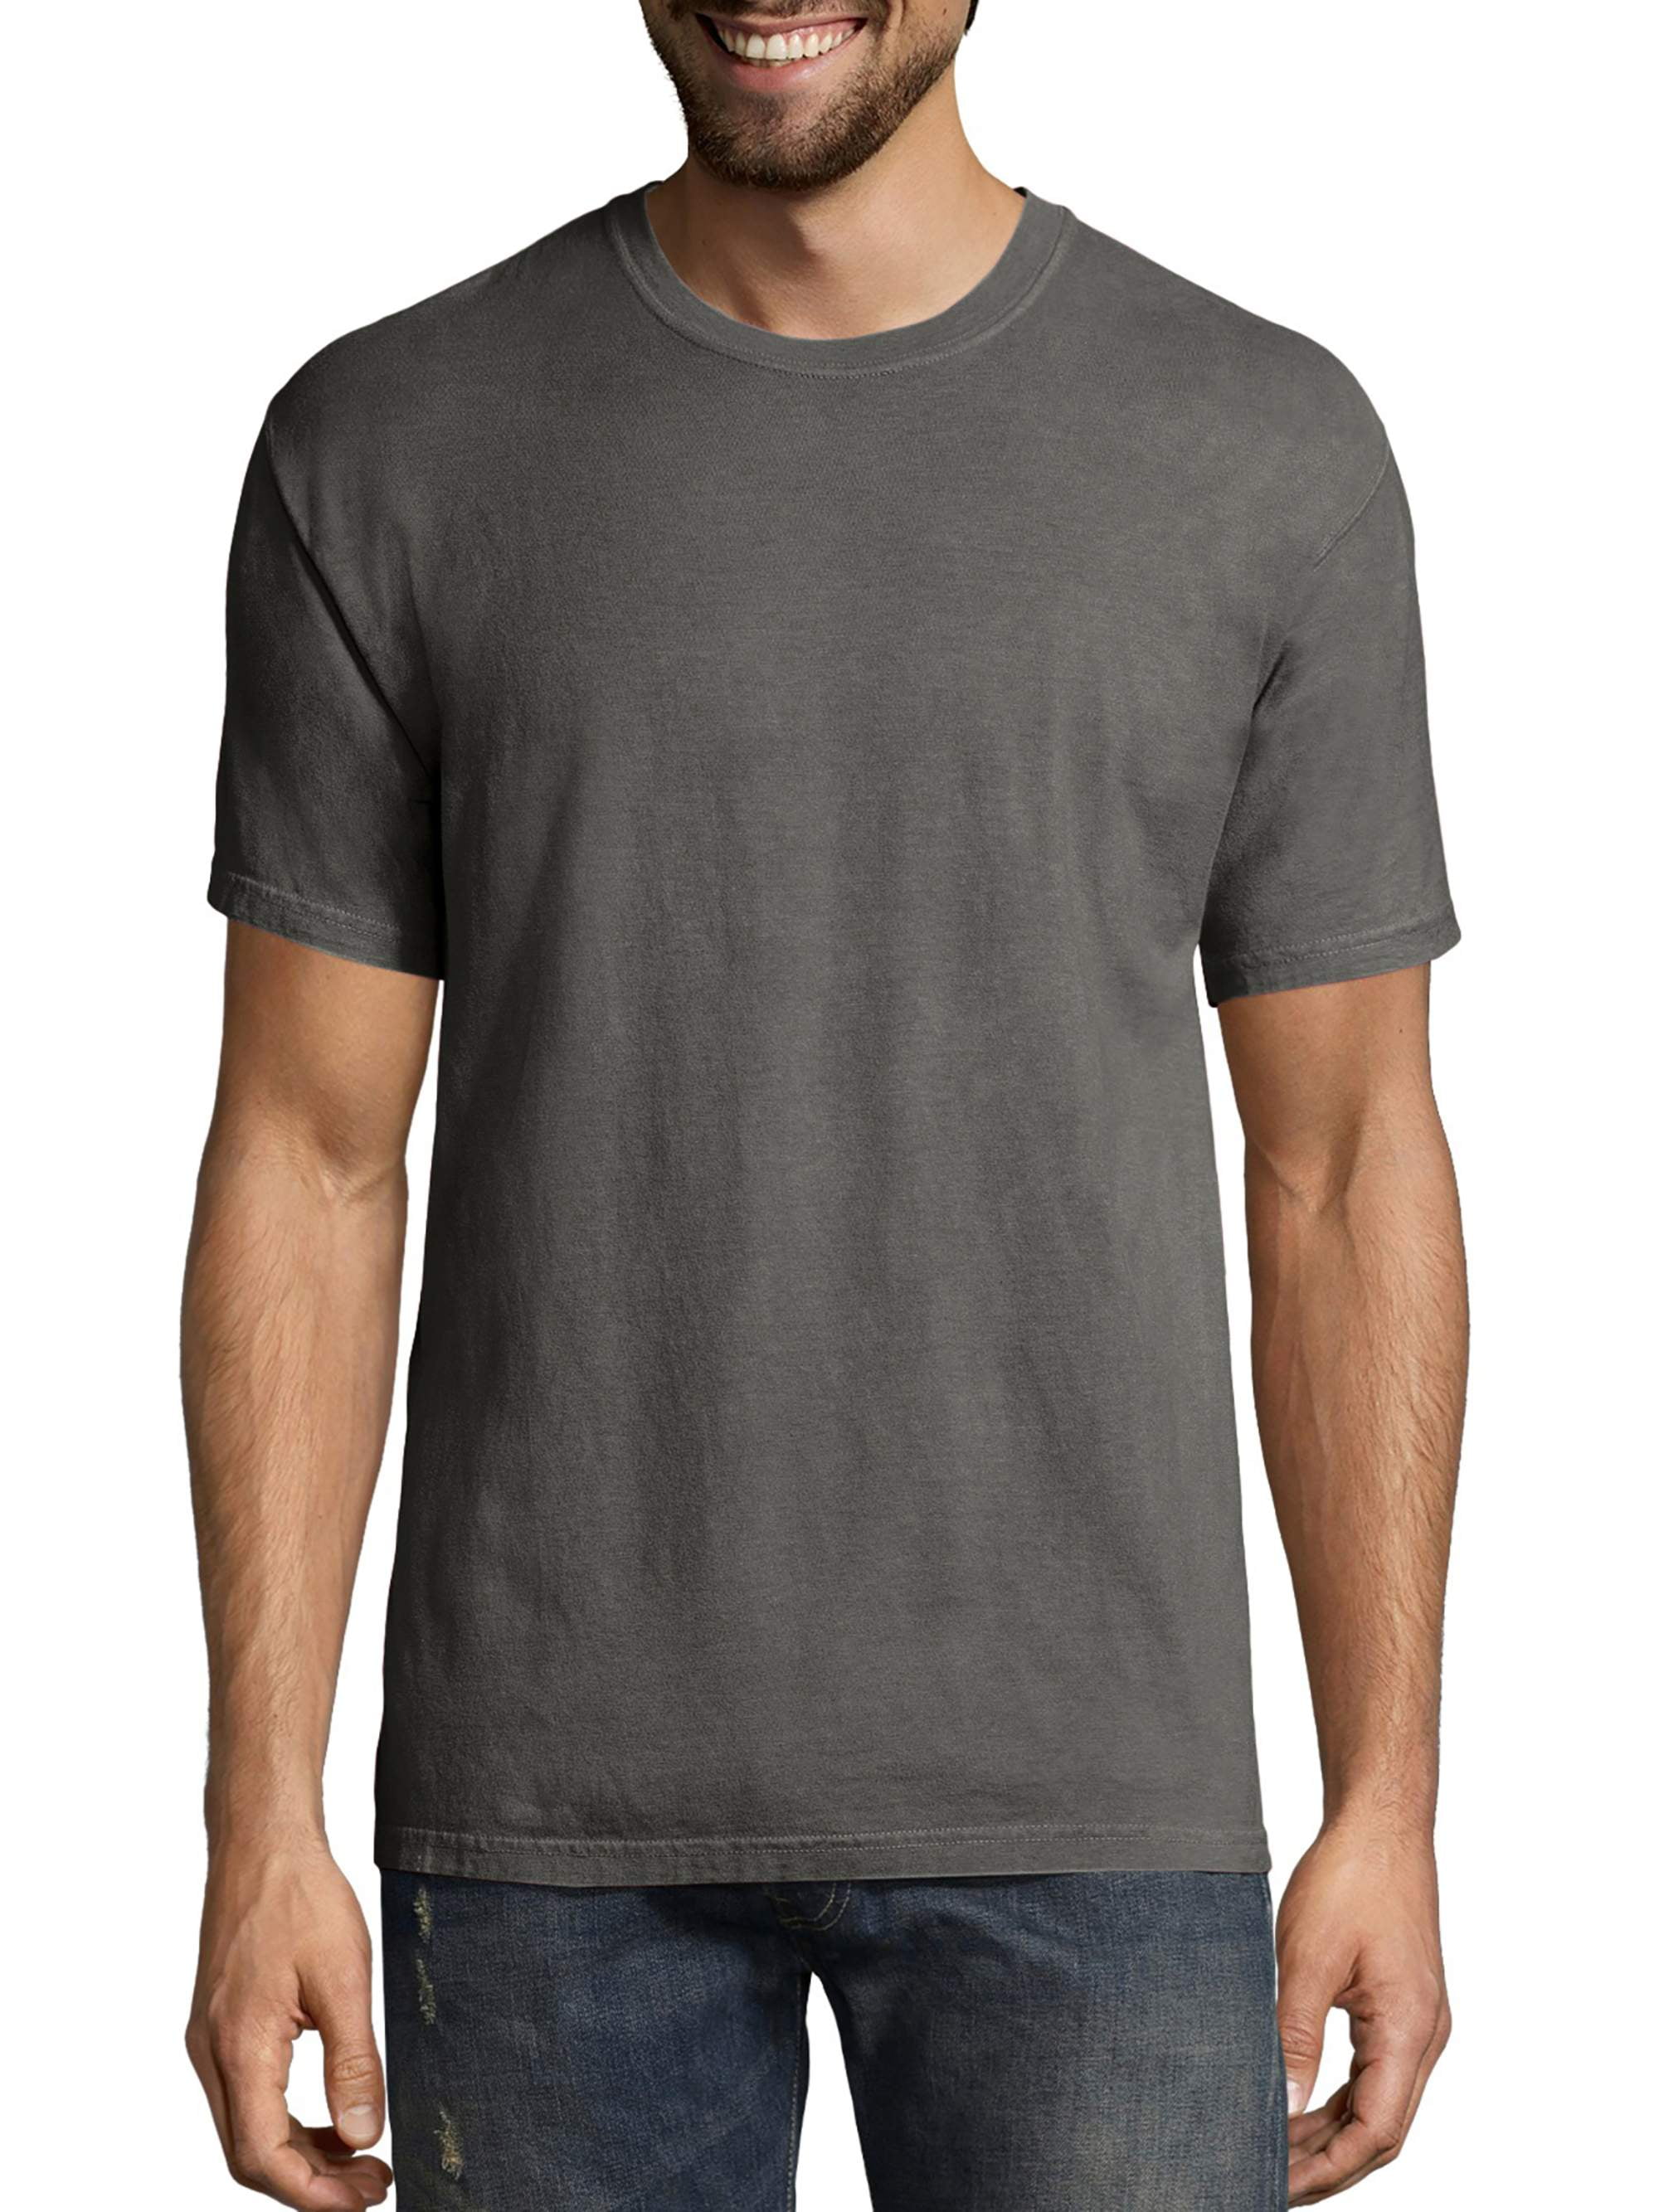 6XL Hanes Men's Comfort Soft Short Sleeve Shirt